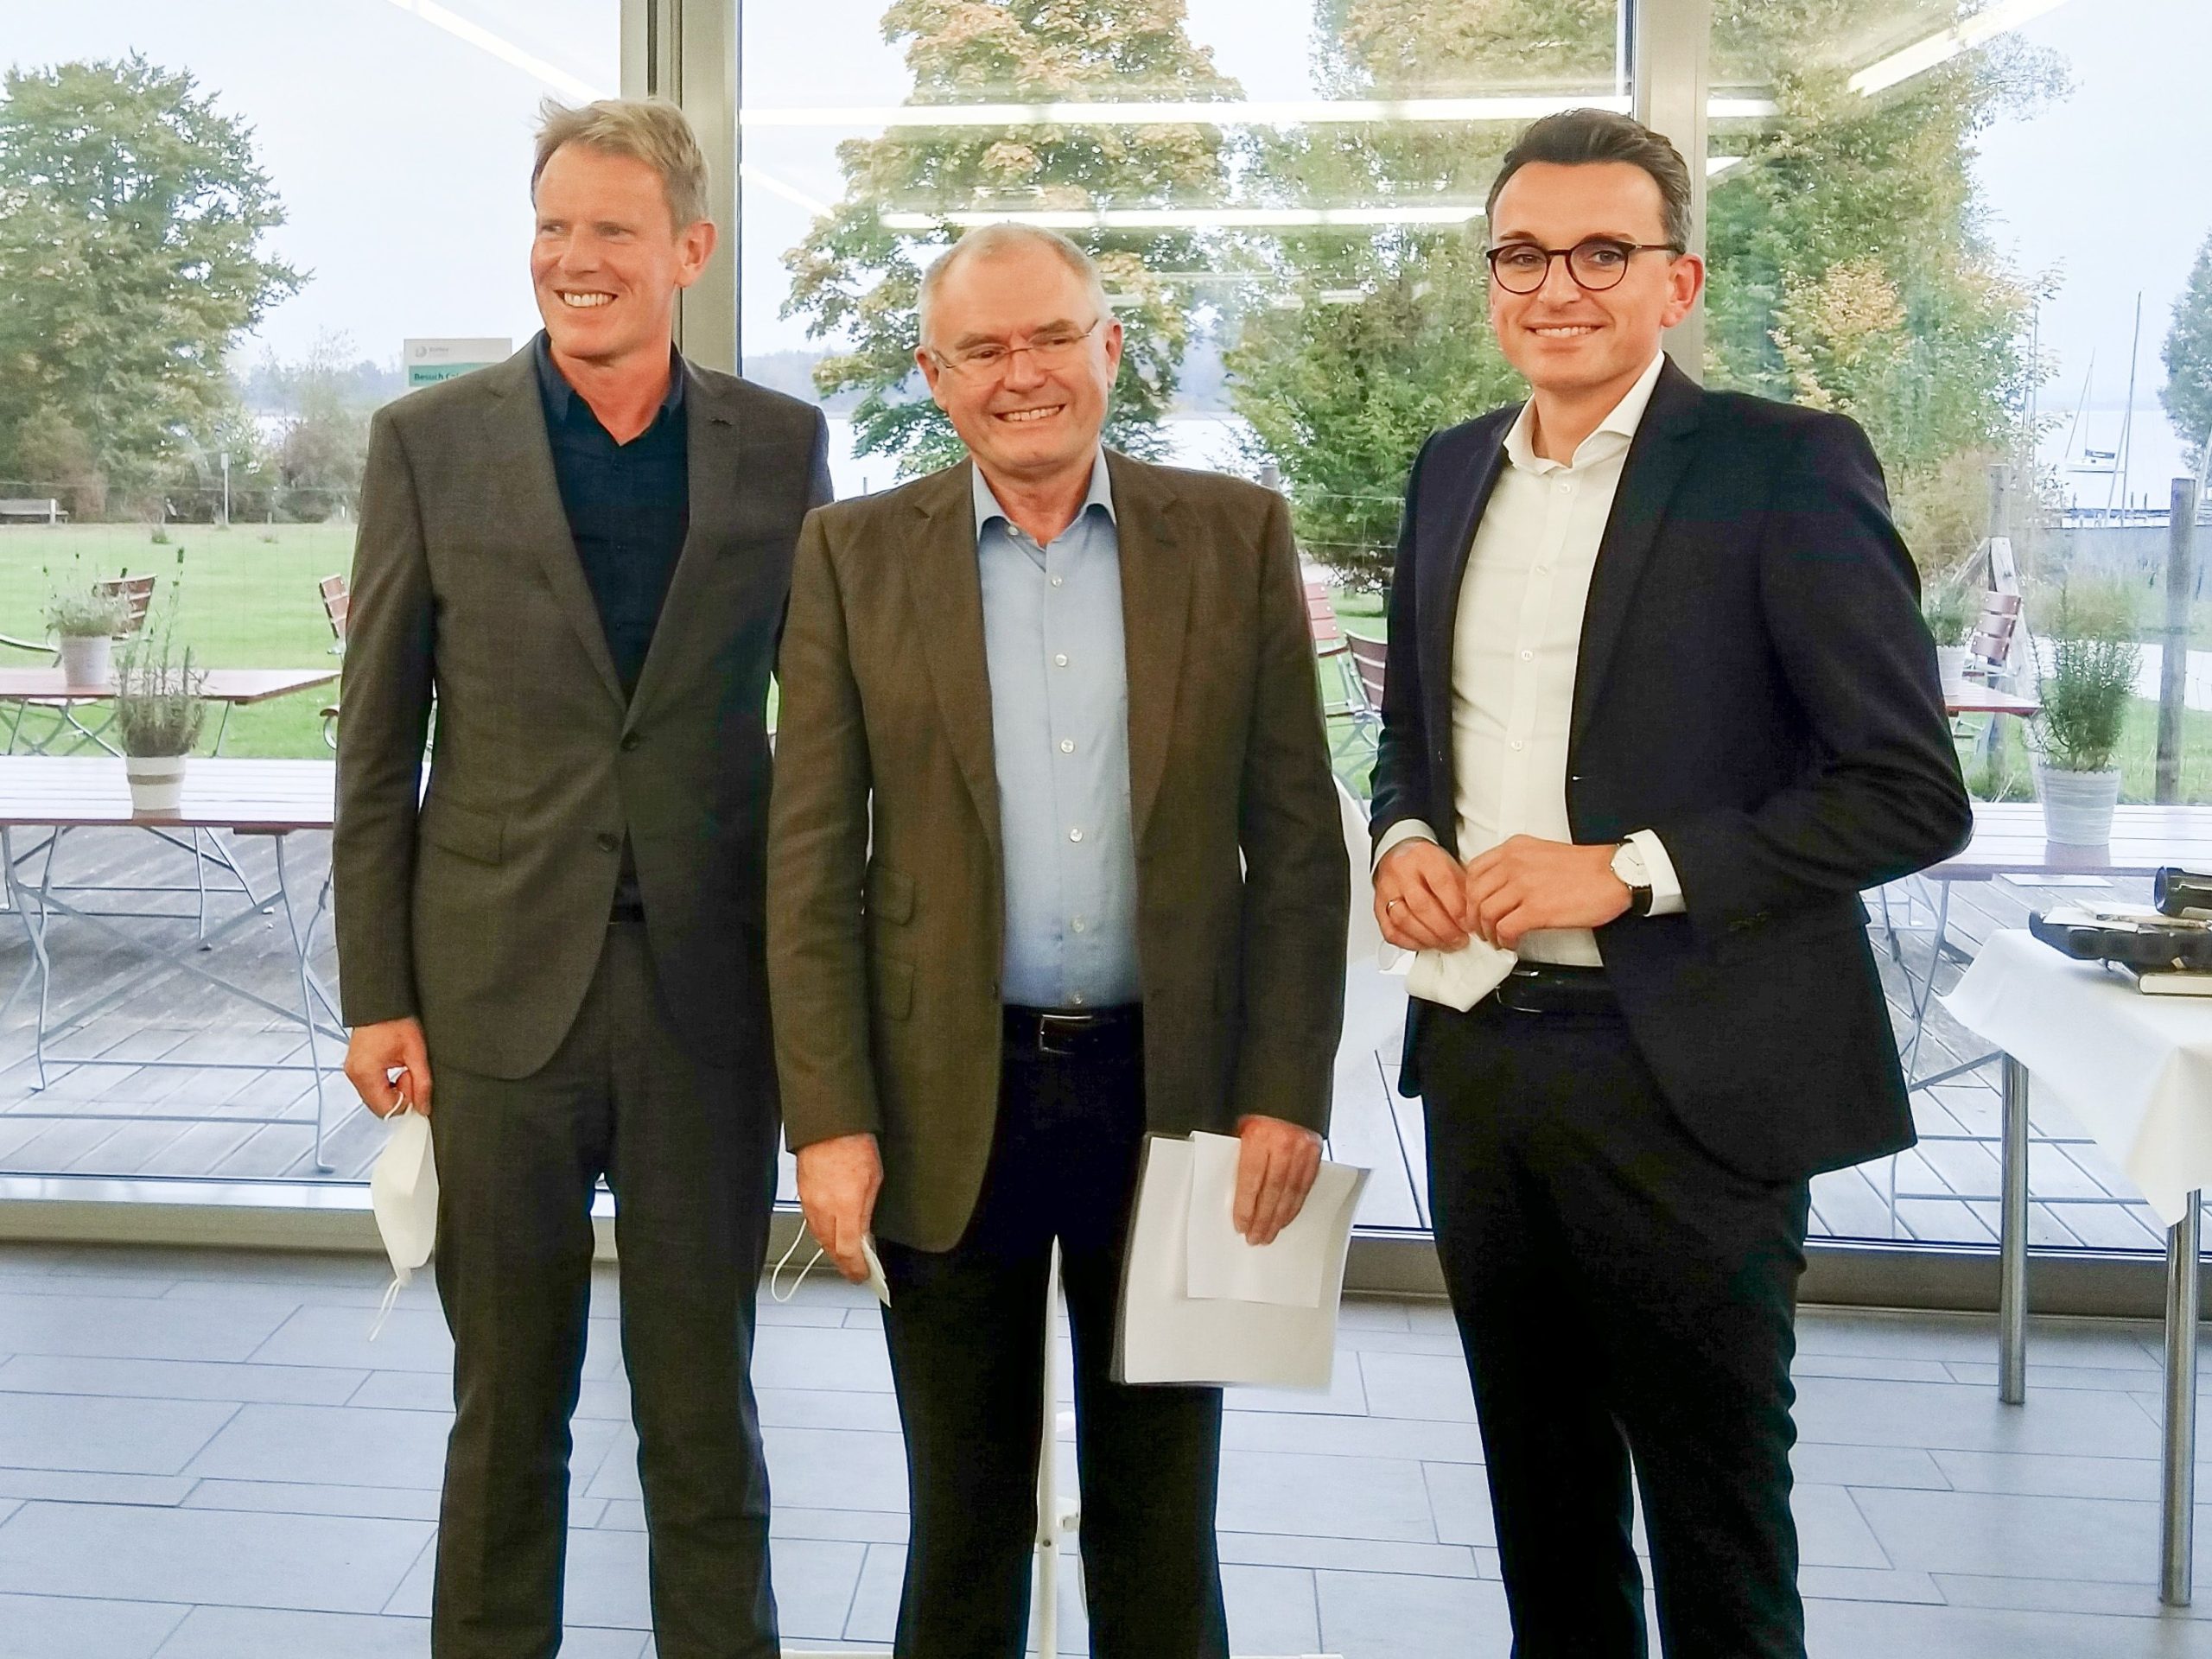 Der langjährige Chefarzt Prof. Dr. Josef Stadler (Mitte) wird von RoMed-Geschäftsführer Dr. Jens Deerberg-Wittram und Kaufmännischen Leiter Marco Weidemeier verabschiedet